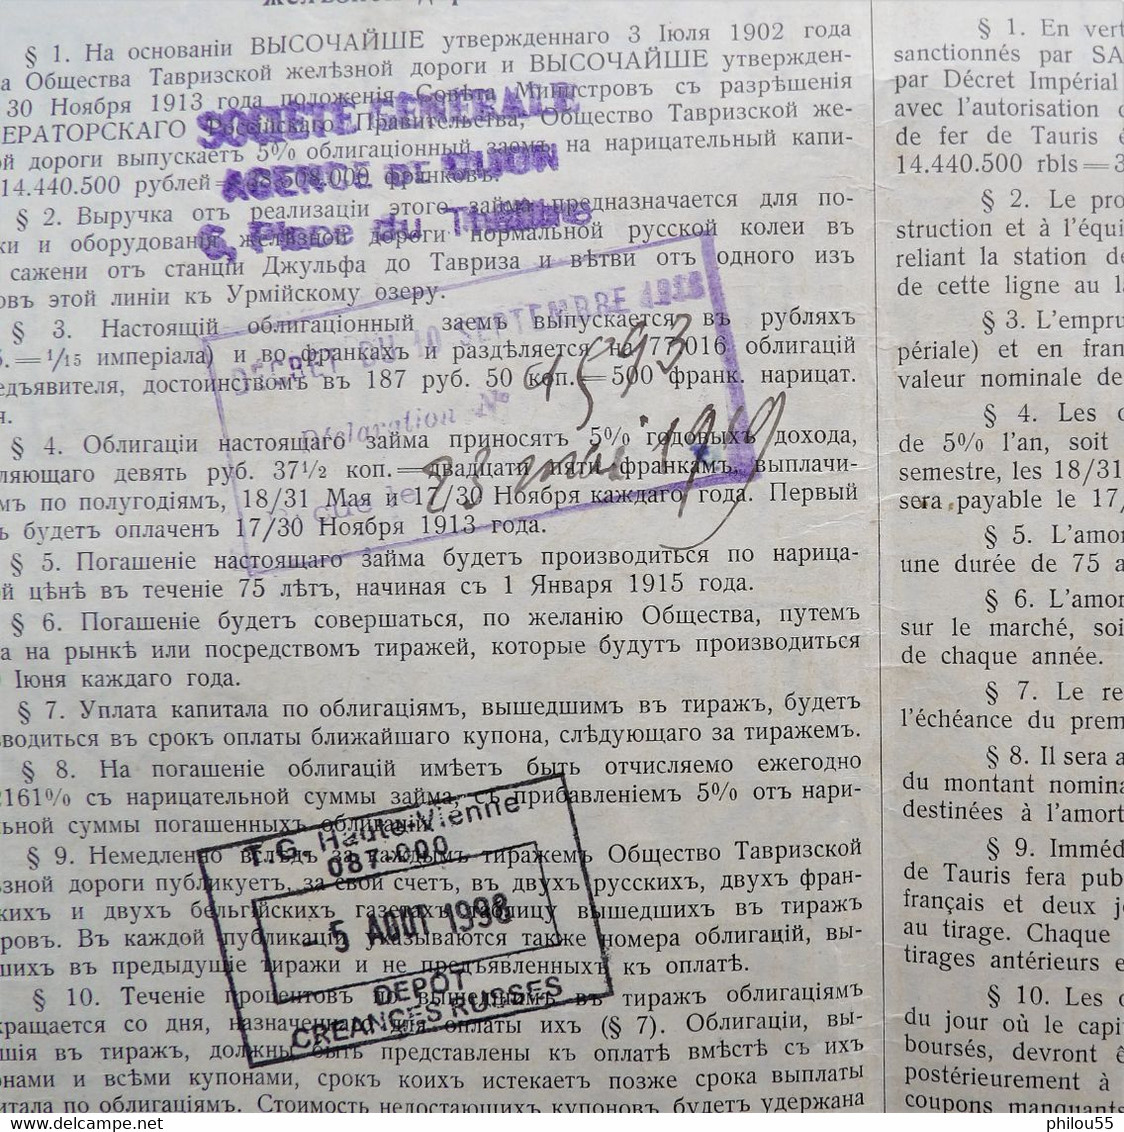 Emprunt Obligations SOCIETE DU CHEMIN DE FER DE TAURIS 5% 1913 Coupons - Russie